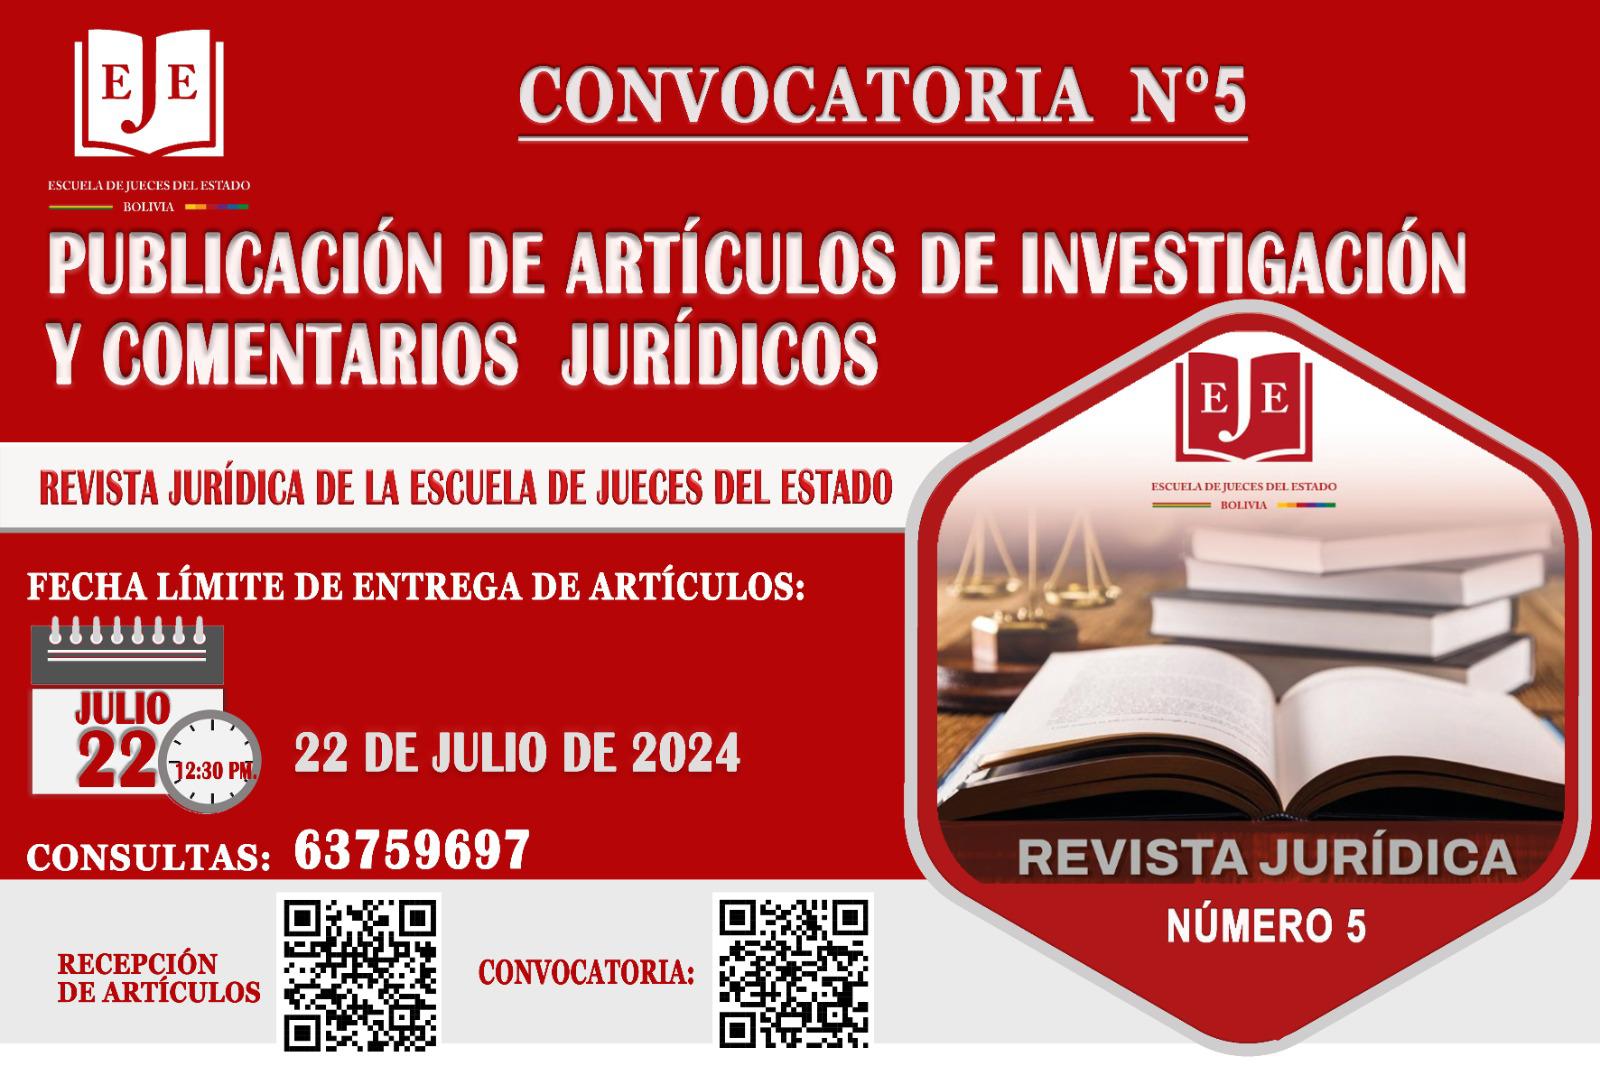 CONVOCATORIA N° 5 - PUBLICACIÓN DE ARTICULOS DE INVESTIGACION JURÍDICOS